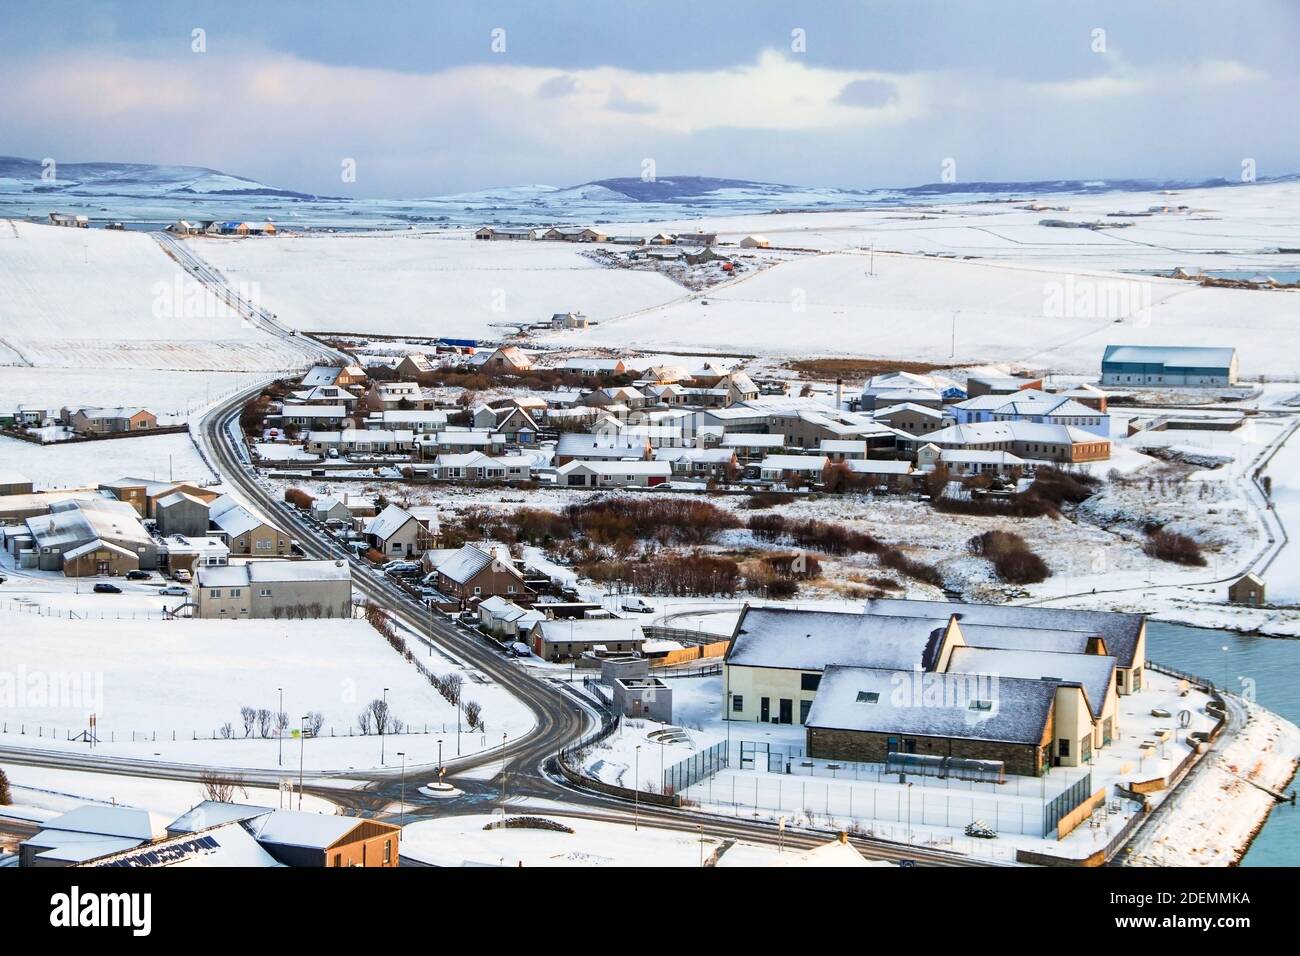 Escena invernal con vista aérea de la ciudad escocesa en Orkney isla con casas y carretera cubierta de nieve Foto de stock